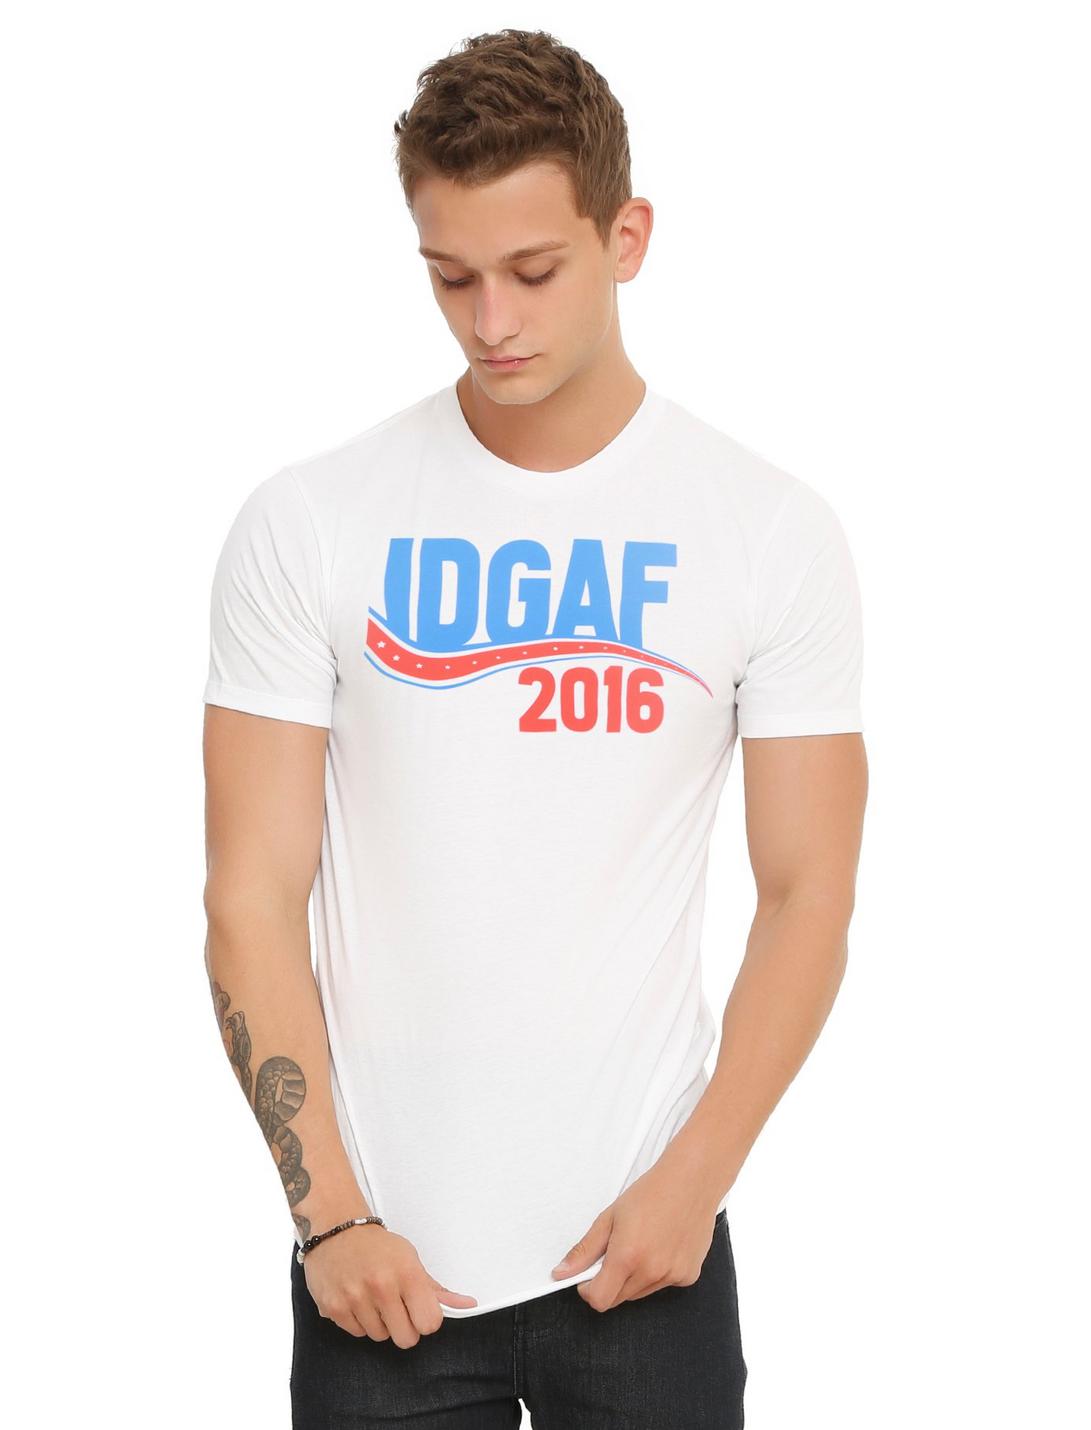 IDGAF 2016 T-Shirt, WHITE, hi-res